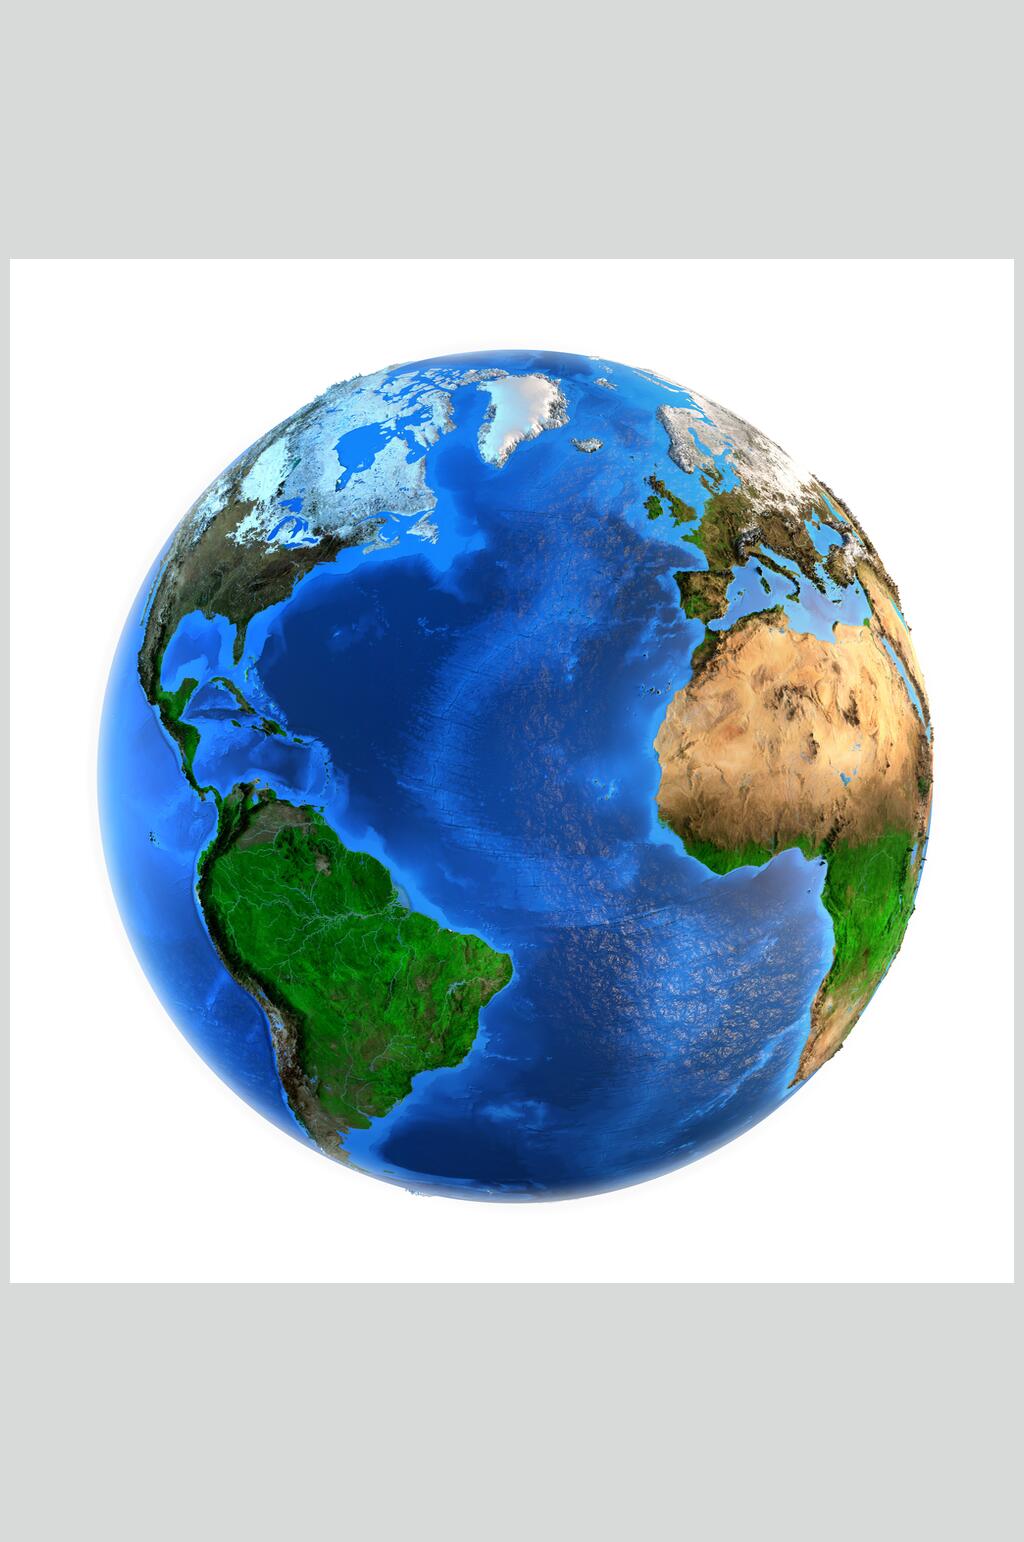 超清3d地图地球专业版图片